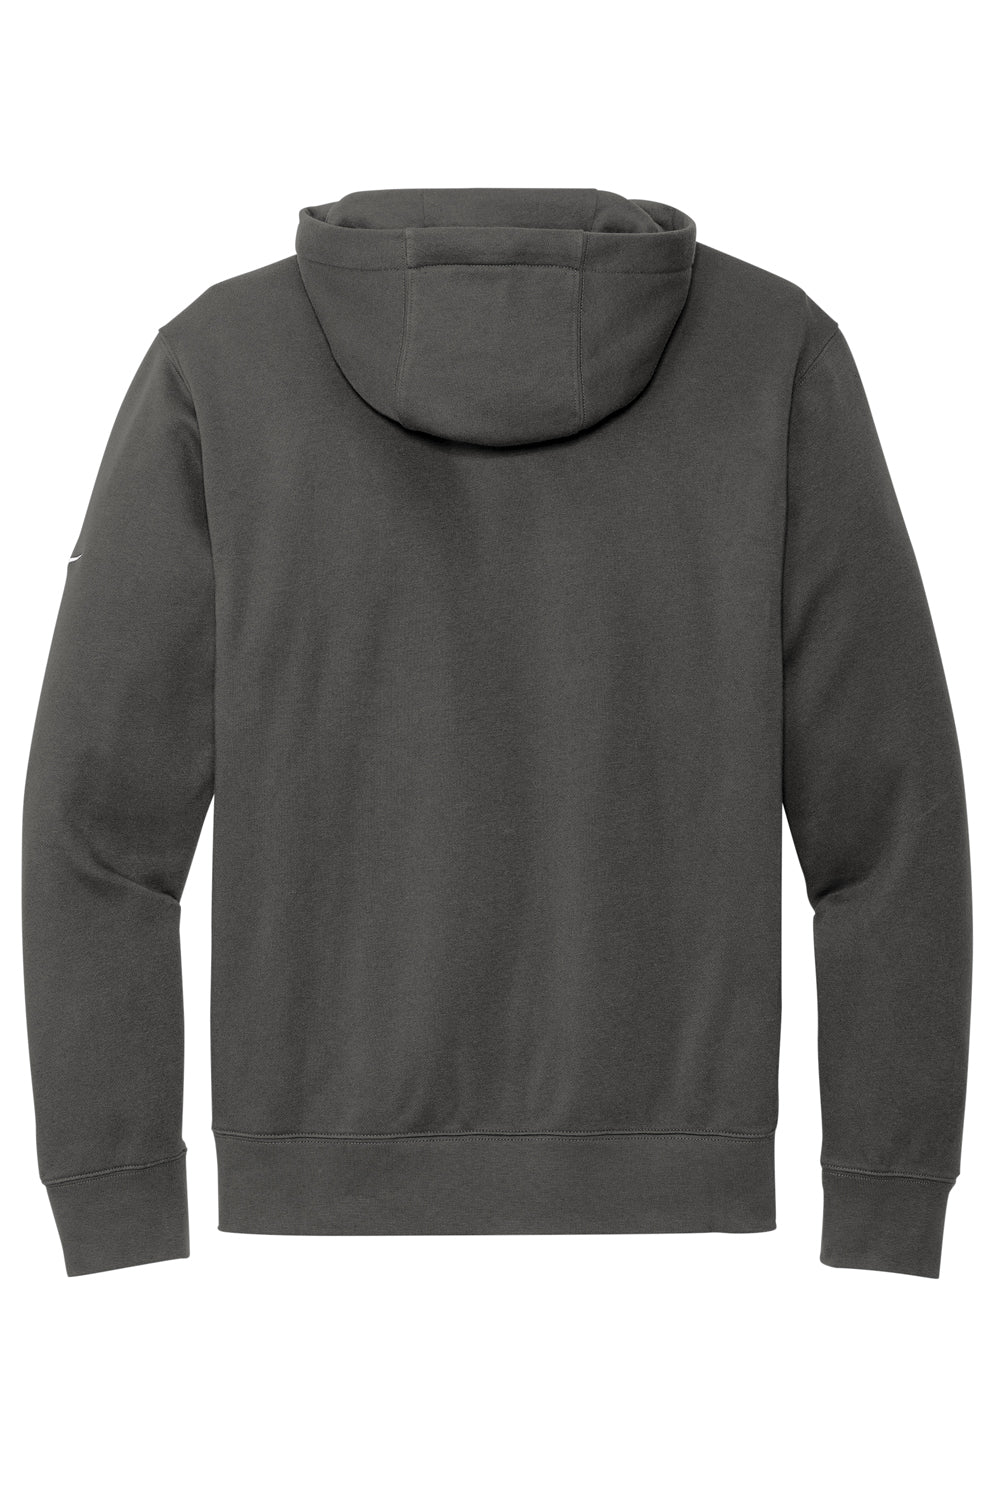 Nike NKDR1499 Mens Club Fleece Hooded Sweatshirt Hoodie Anthracite Grey Flat Back